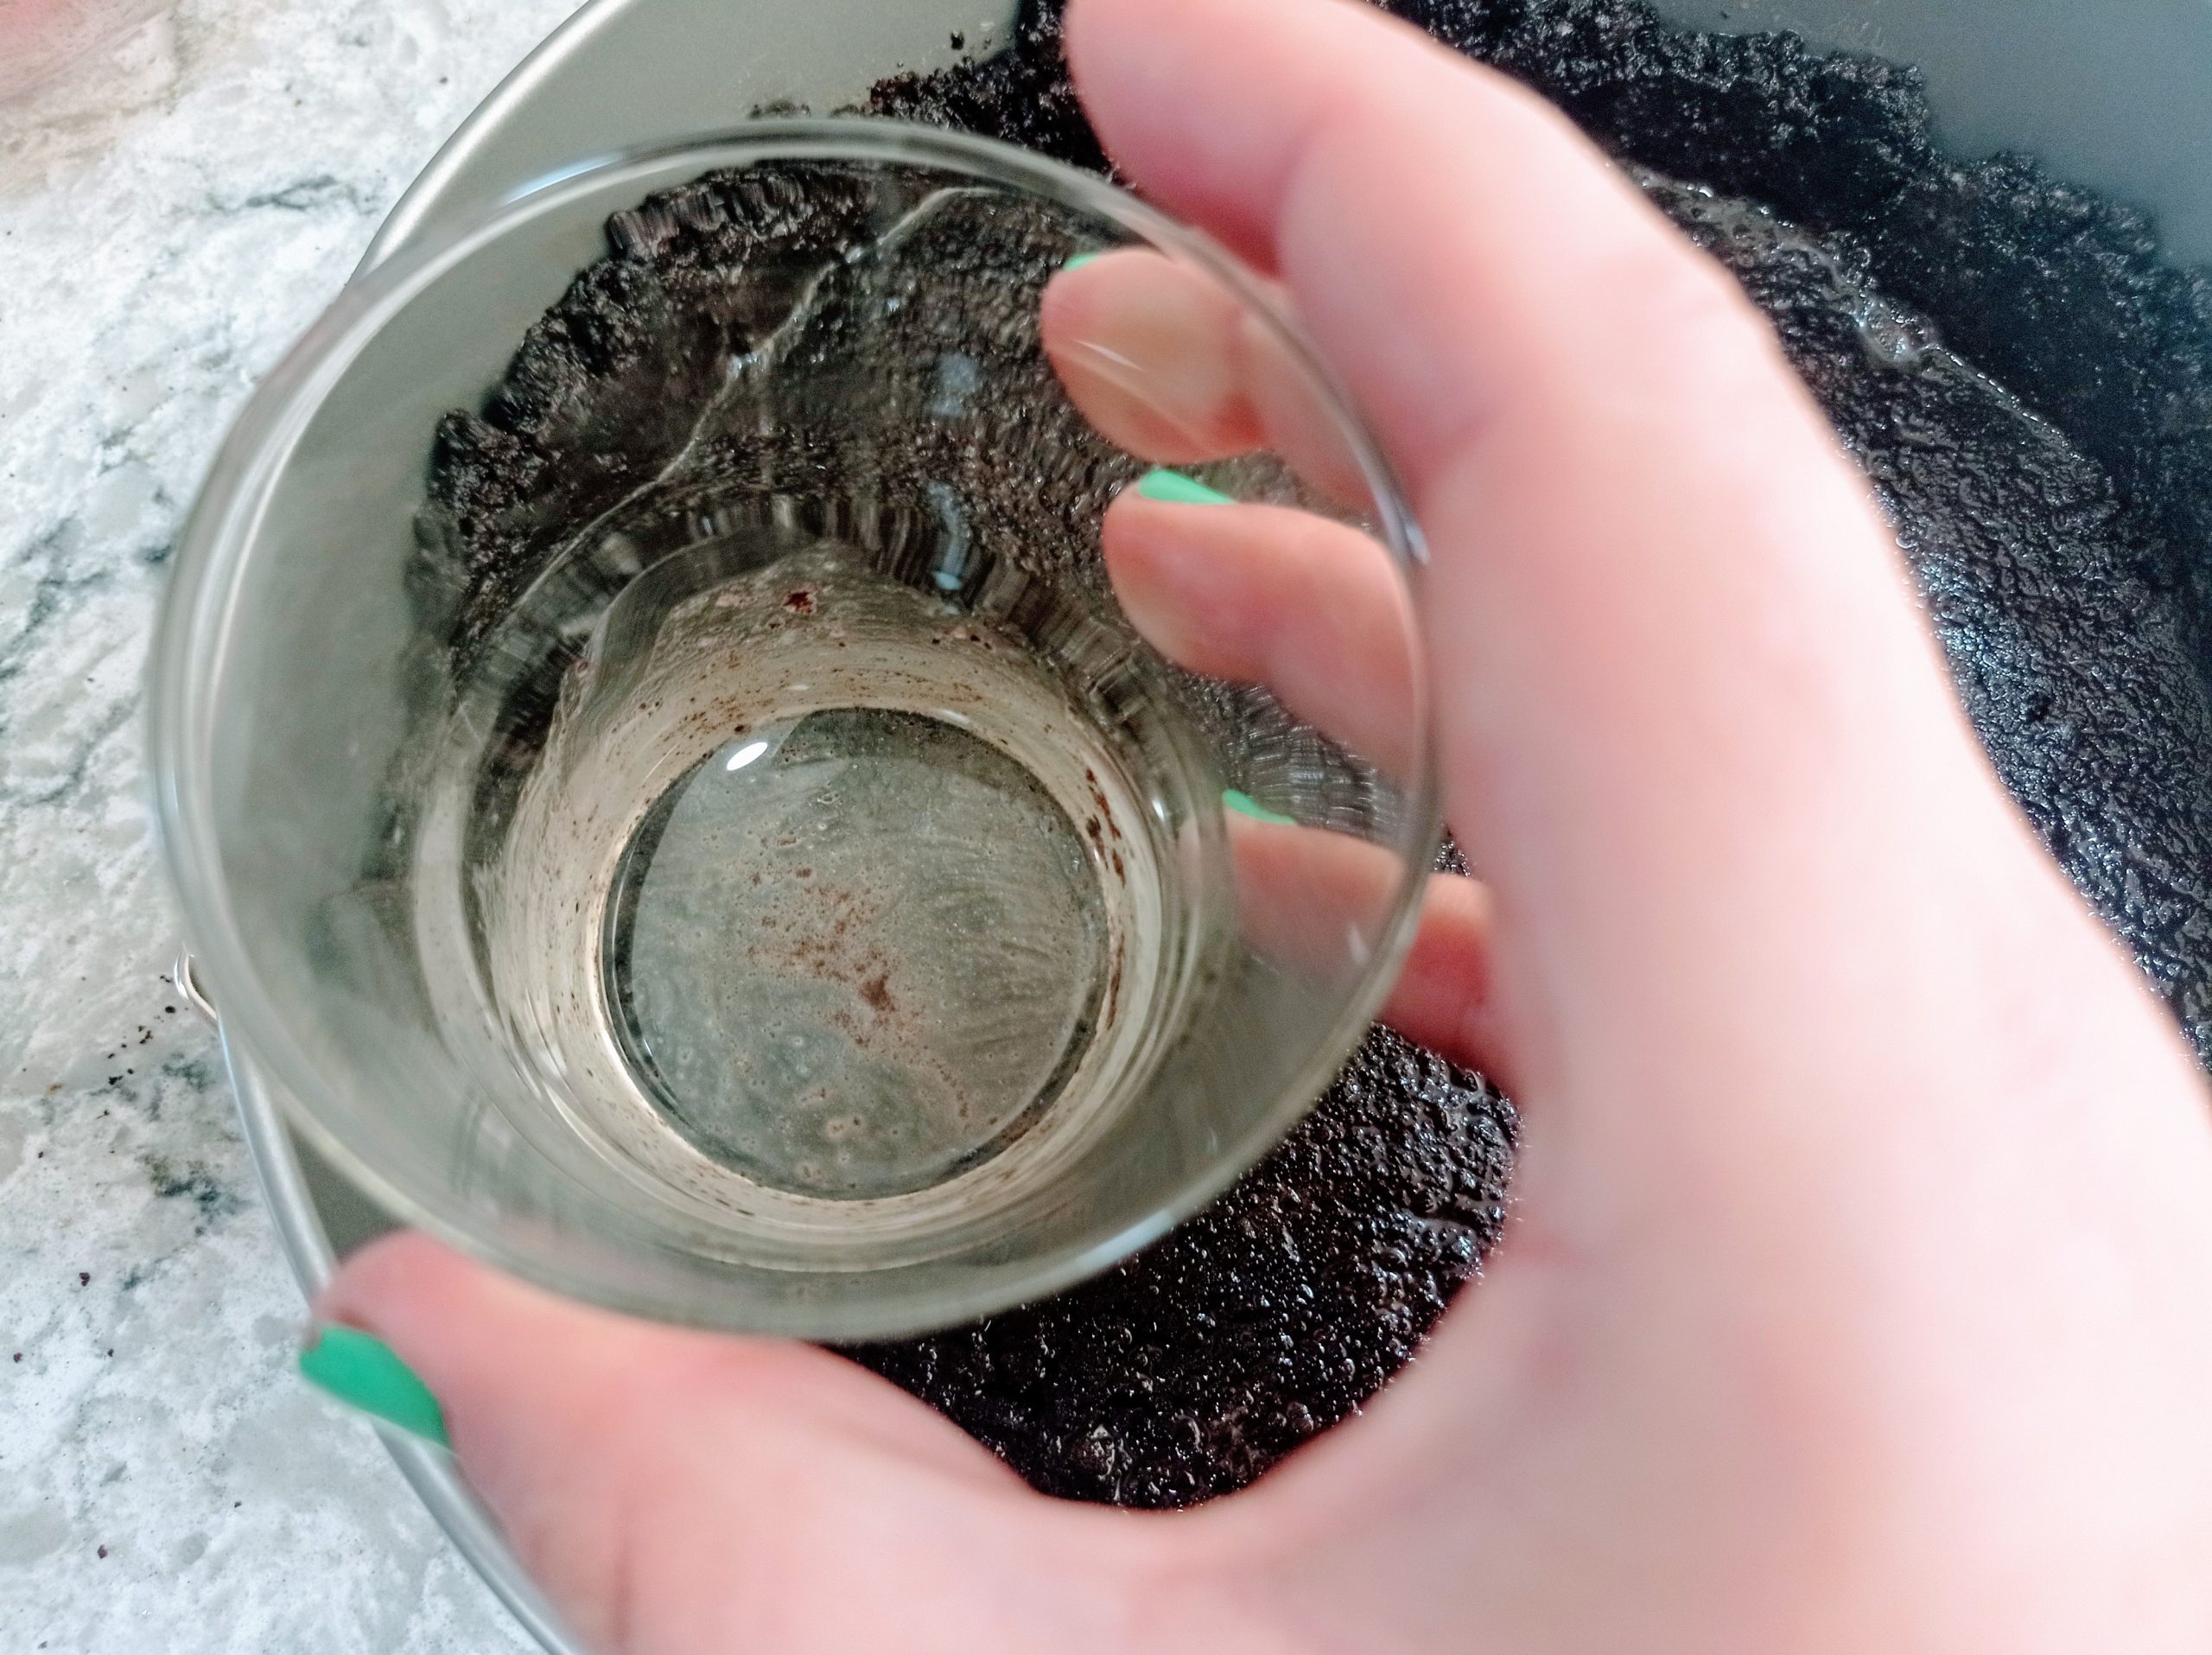 presionando la base de galletas con el fondo de un vaso